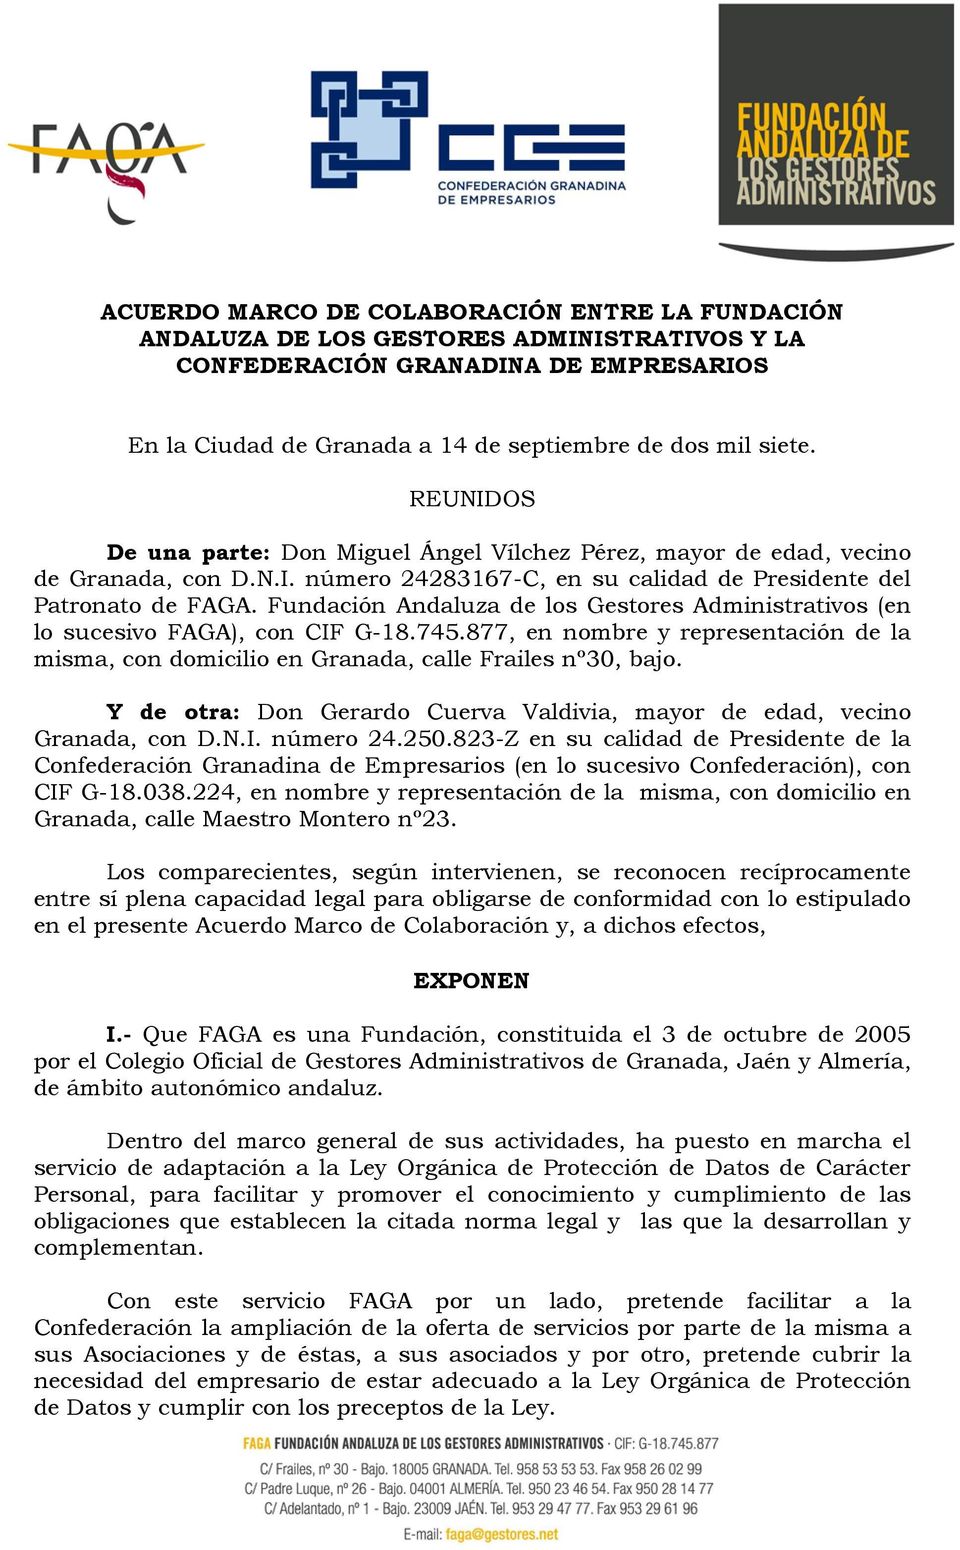 Fundación Andaluza de los Gestores Administrativos (en lo sucesivo FAGA), con CIF G-18.745.877, en nombre y representación de la misma, con domicilio en Granada, calle Frailes nº30, bajo.